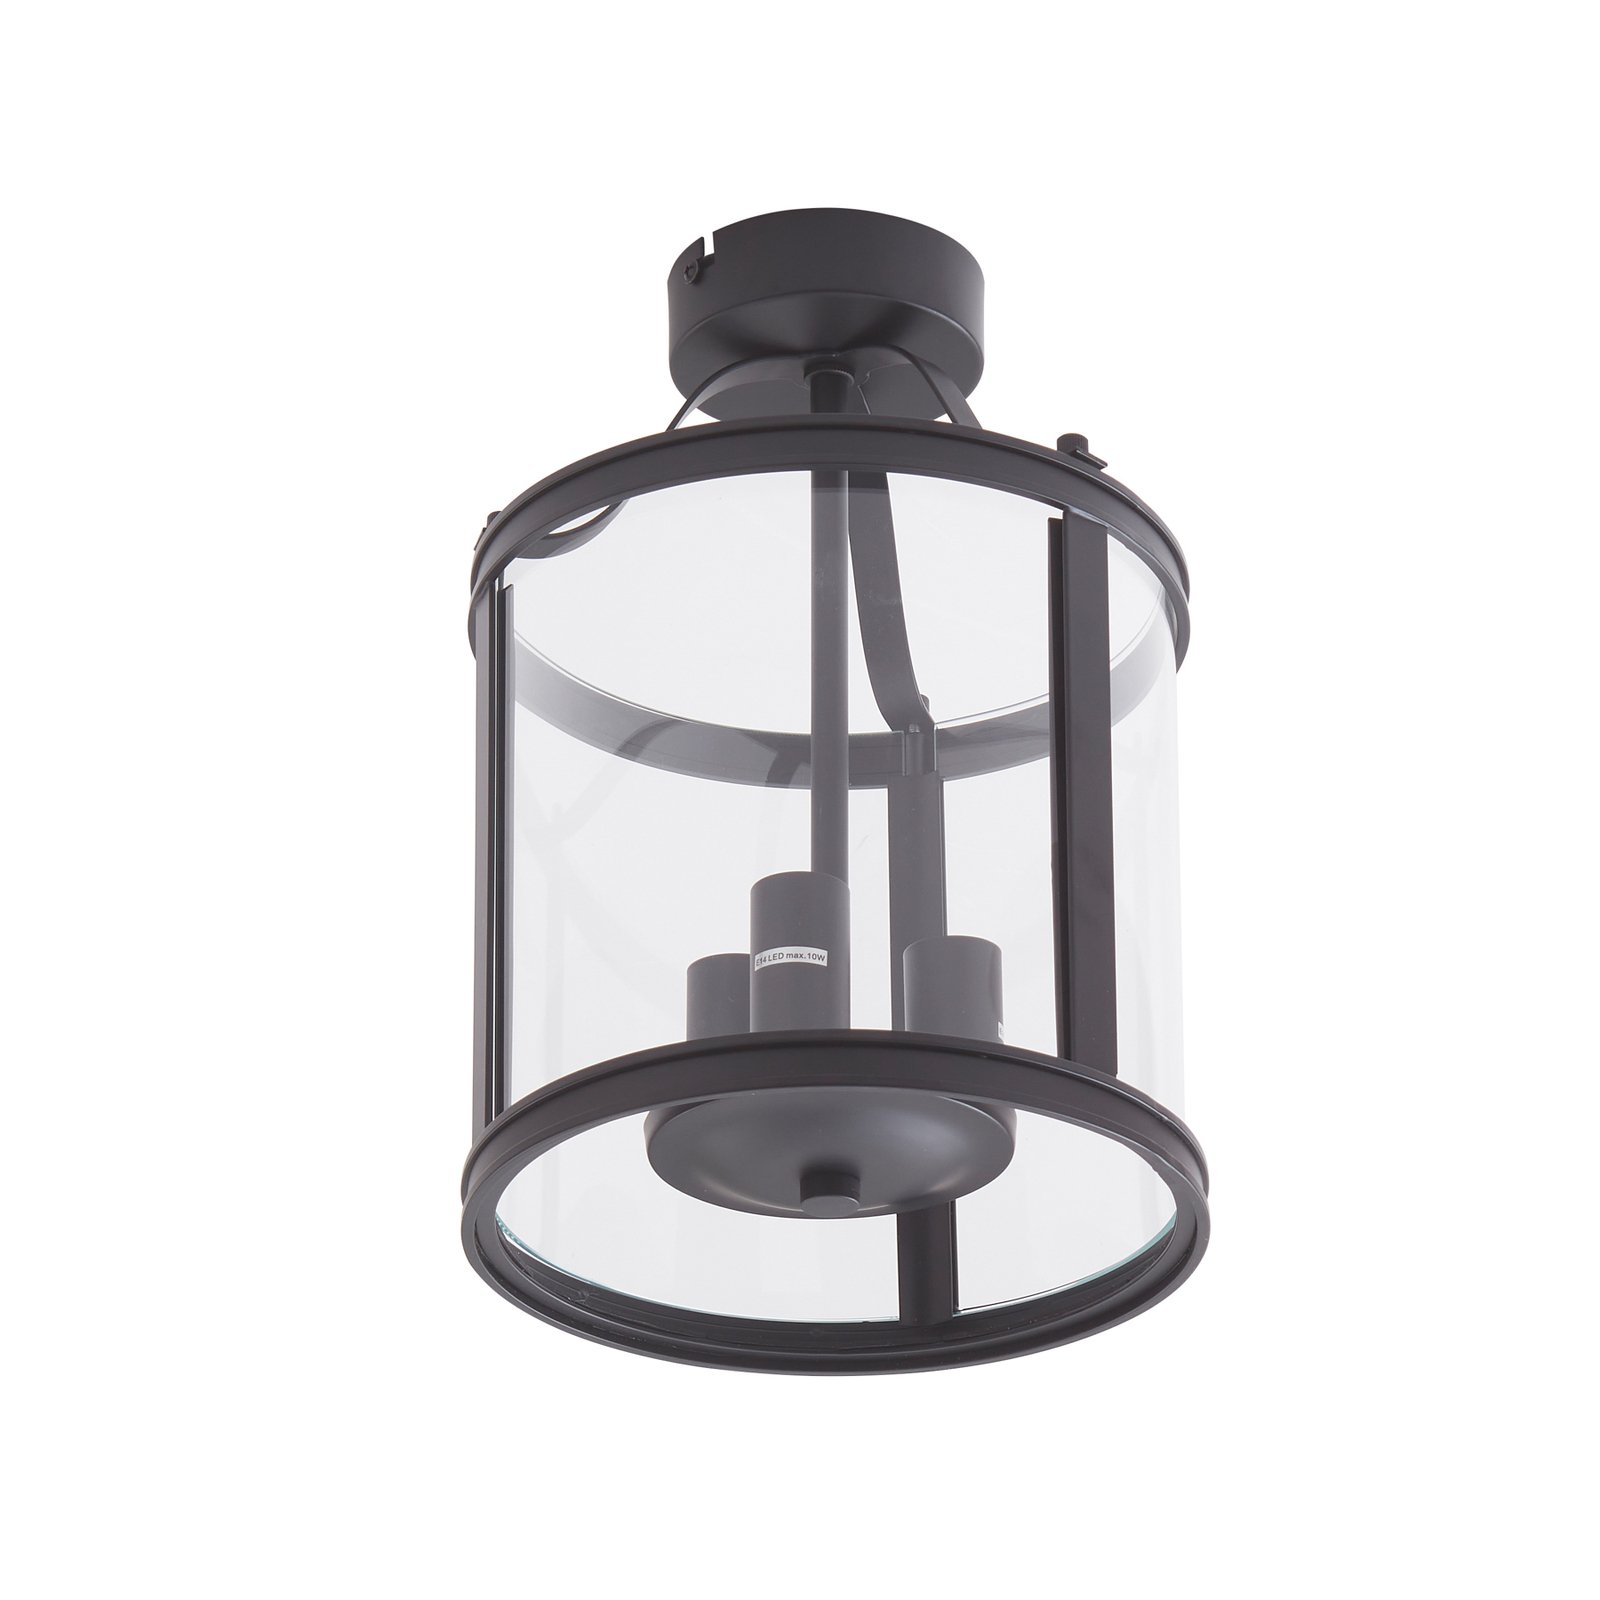 Lucande mennyezeti lámpa Eryk, Ø 23 cm, fekete, üveg, 3 lámpatest, 3 lámpás